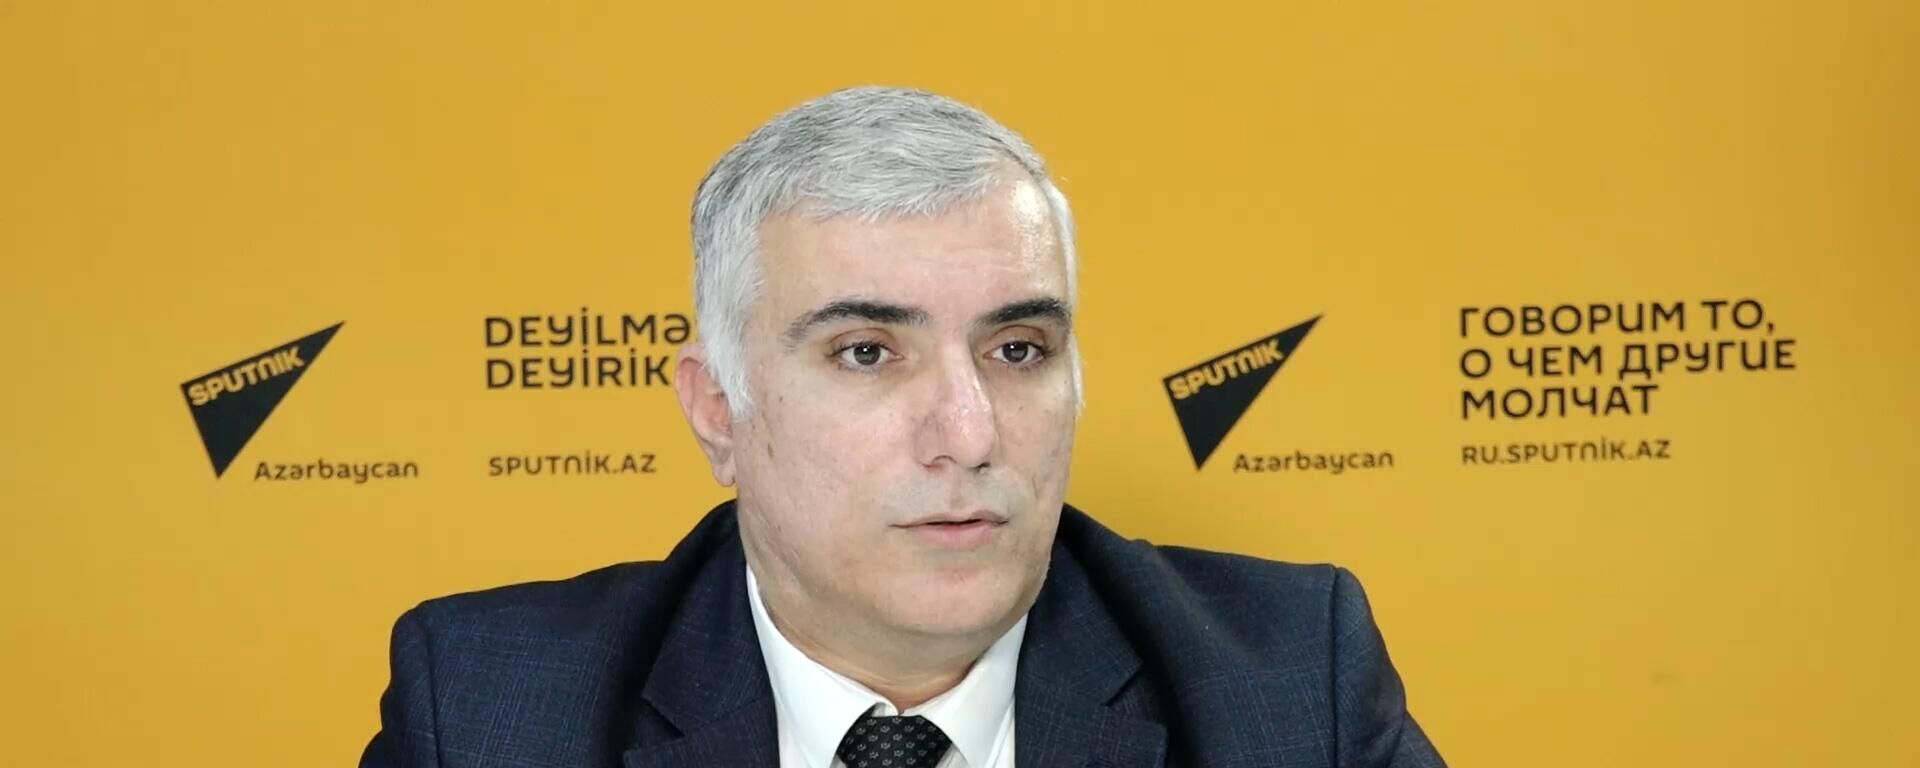 Как изменятся параметры госбюджета Азербайджана в 2024 году? - Sputnik Азербайджан, 1920, 29.11.2023